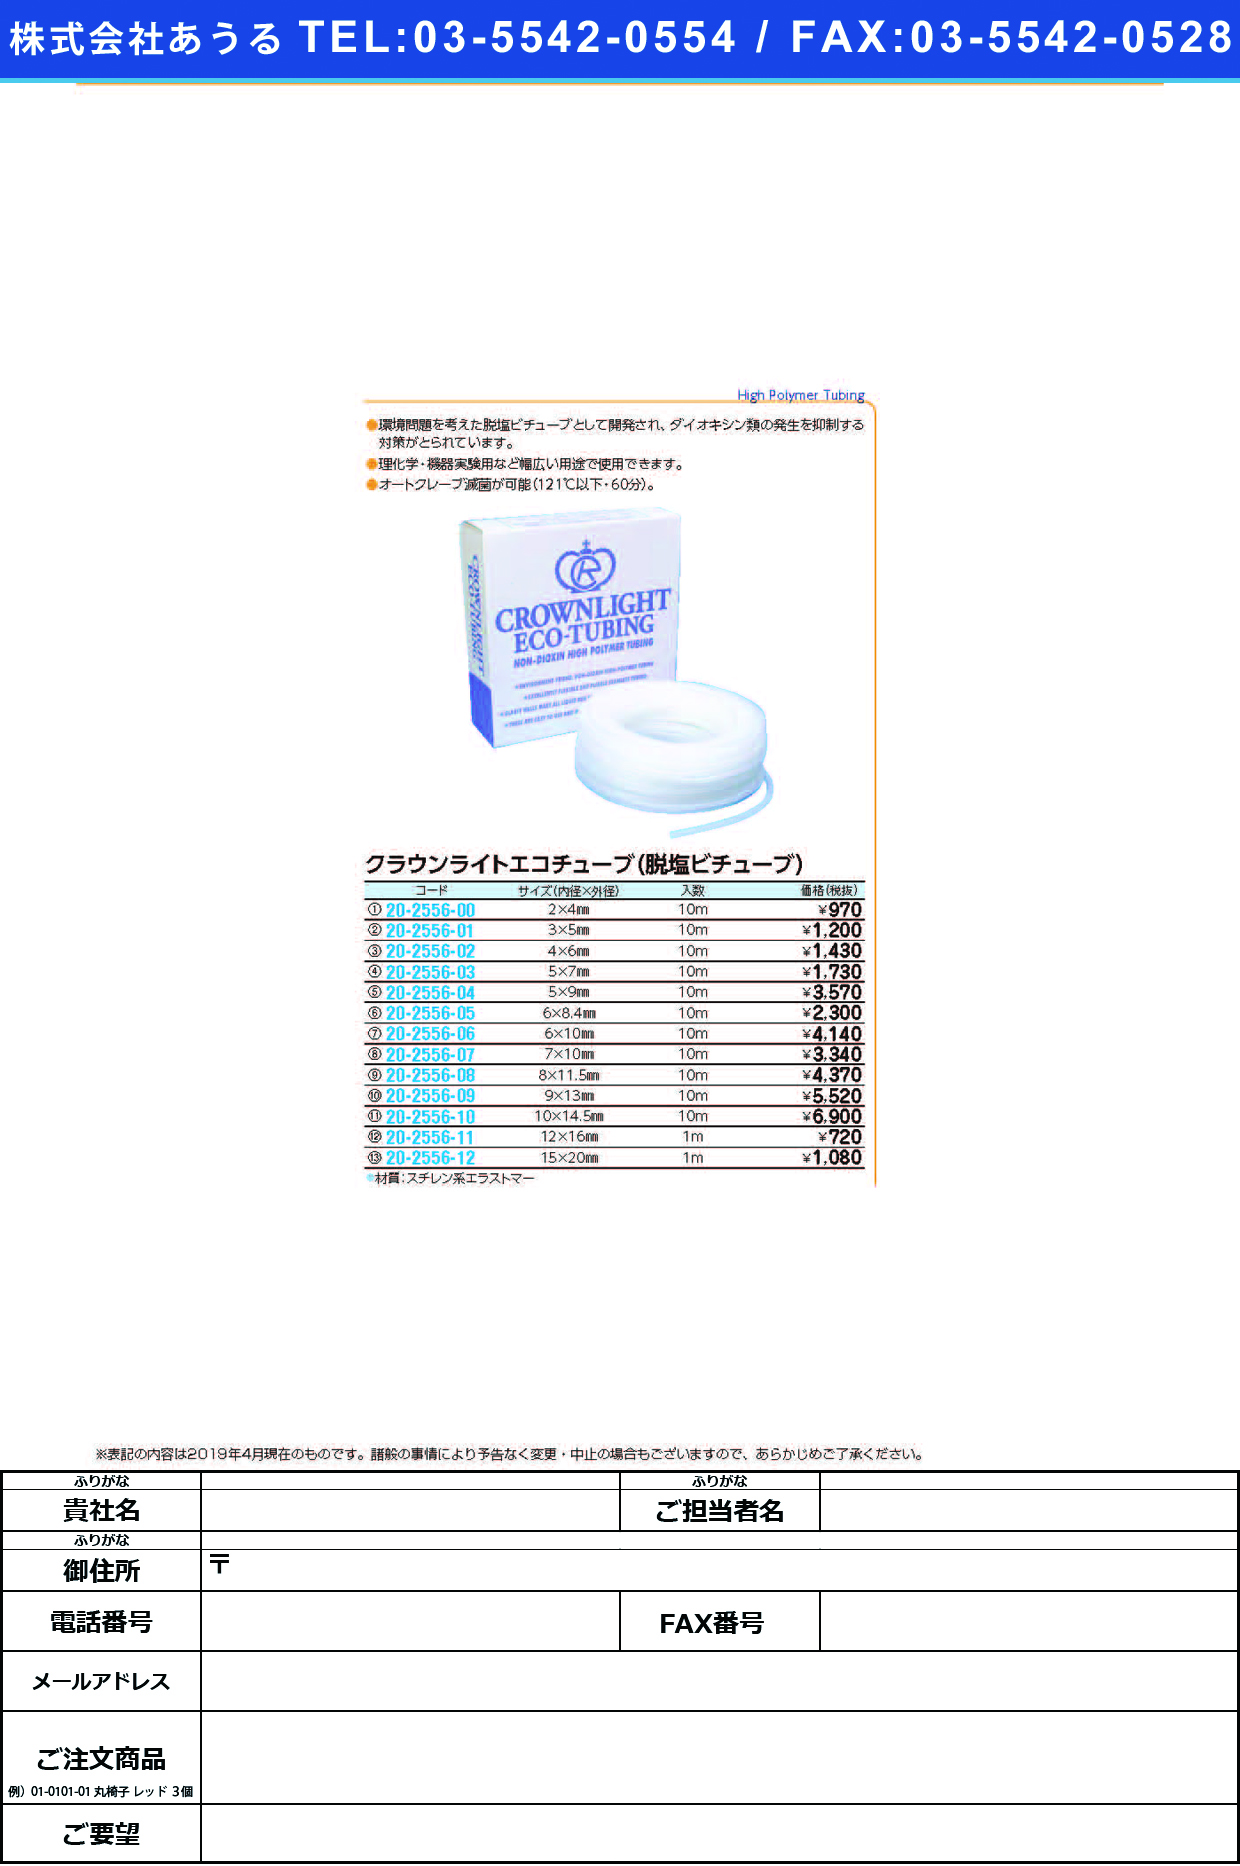 (20-2556-07)クラウンライトエコチューブ 7.0X10.0(10Mｲﾘ) ｸﾗｳﾝﾗｲﾄｴｺﾁｭｰﾌﾞ【1袋単位】【2019年カタログ商品】